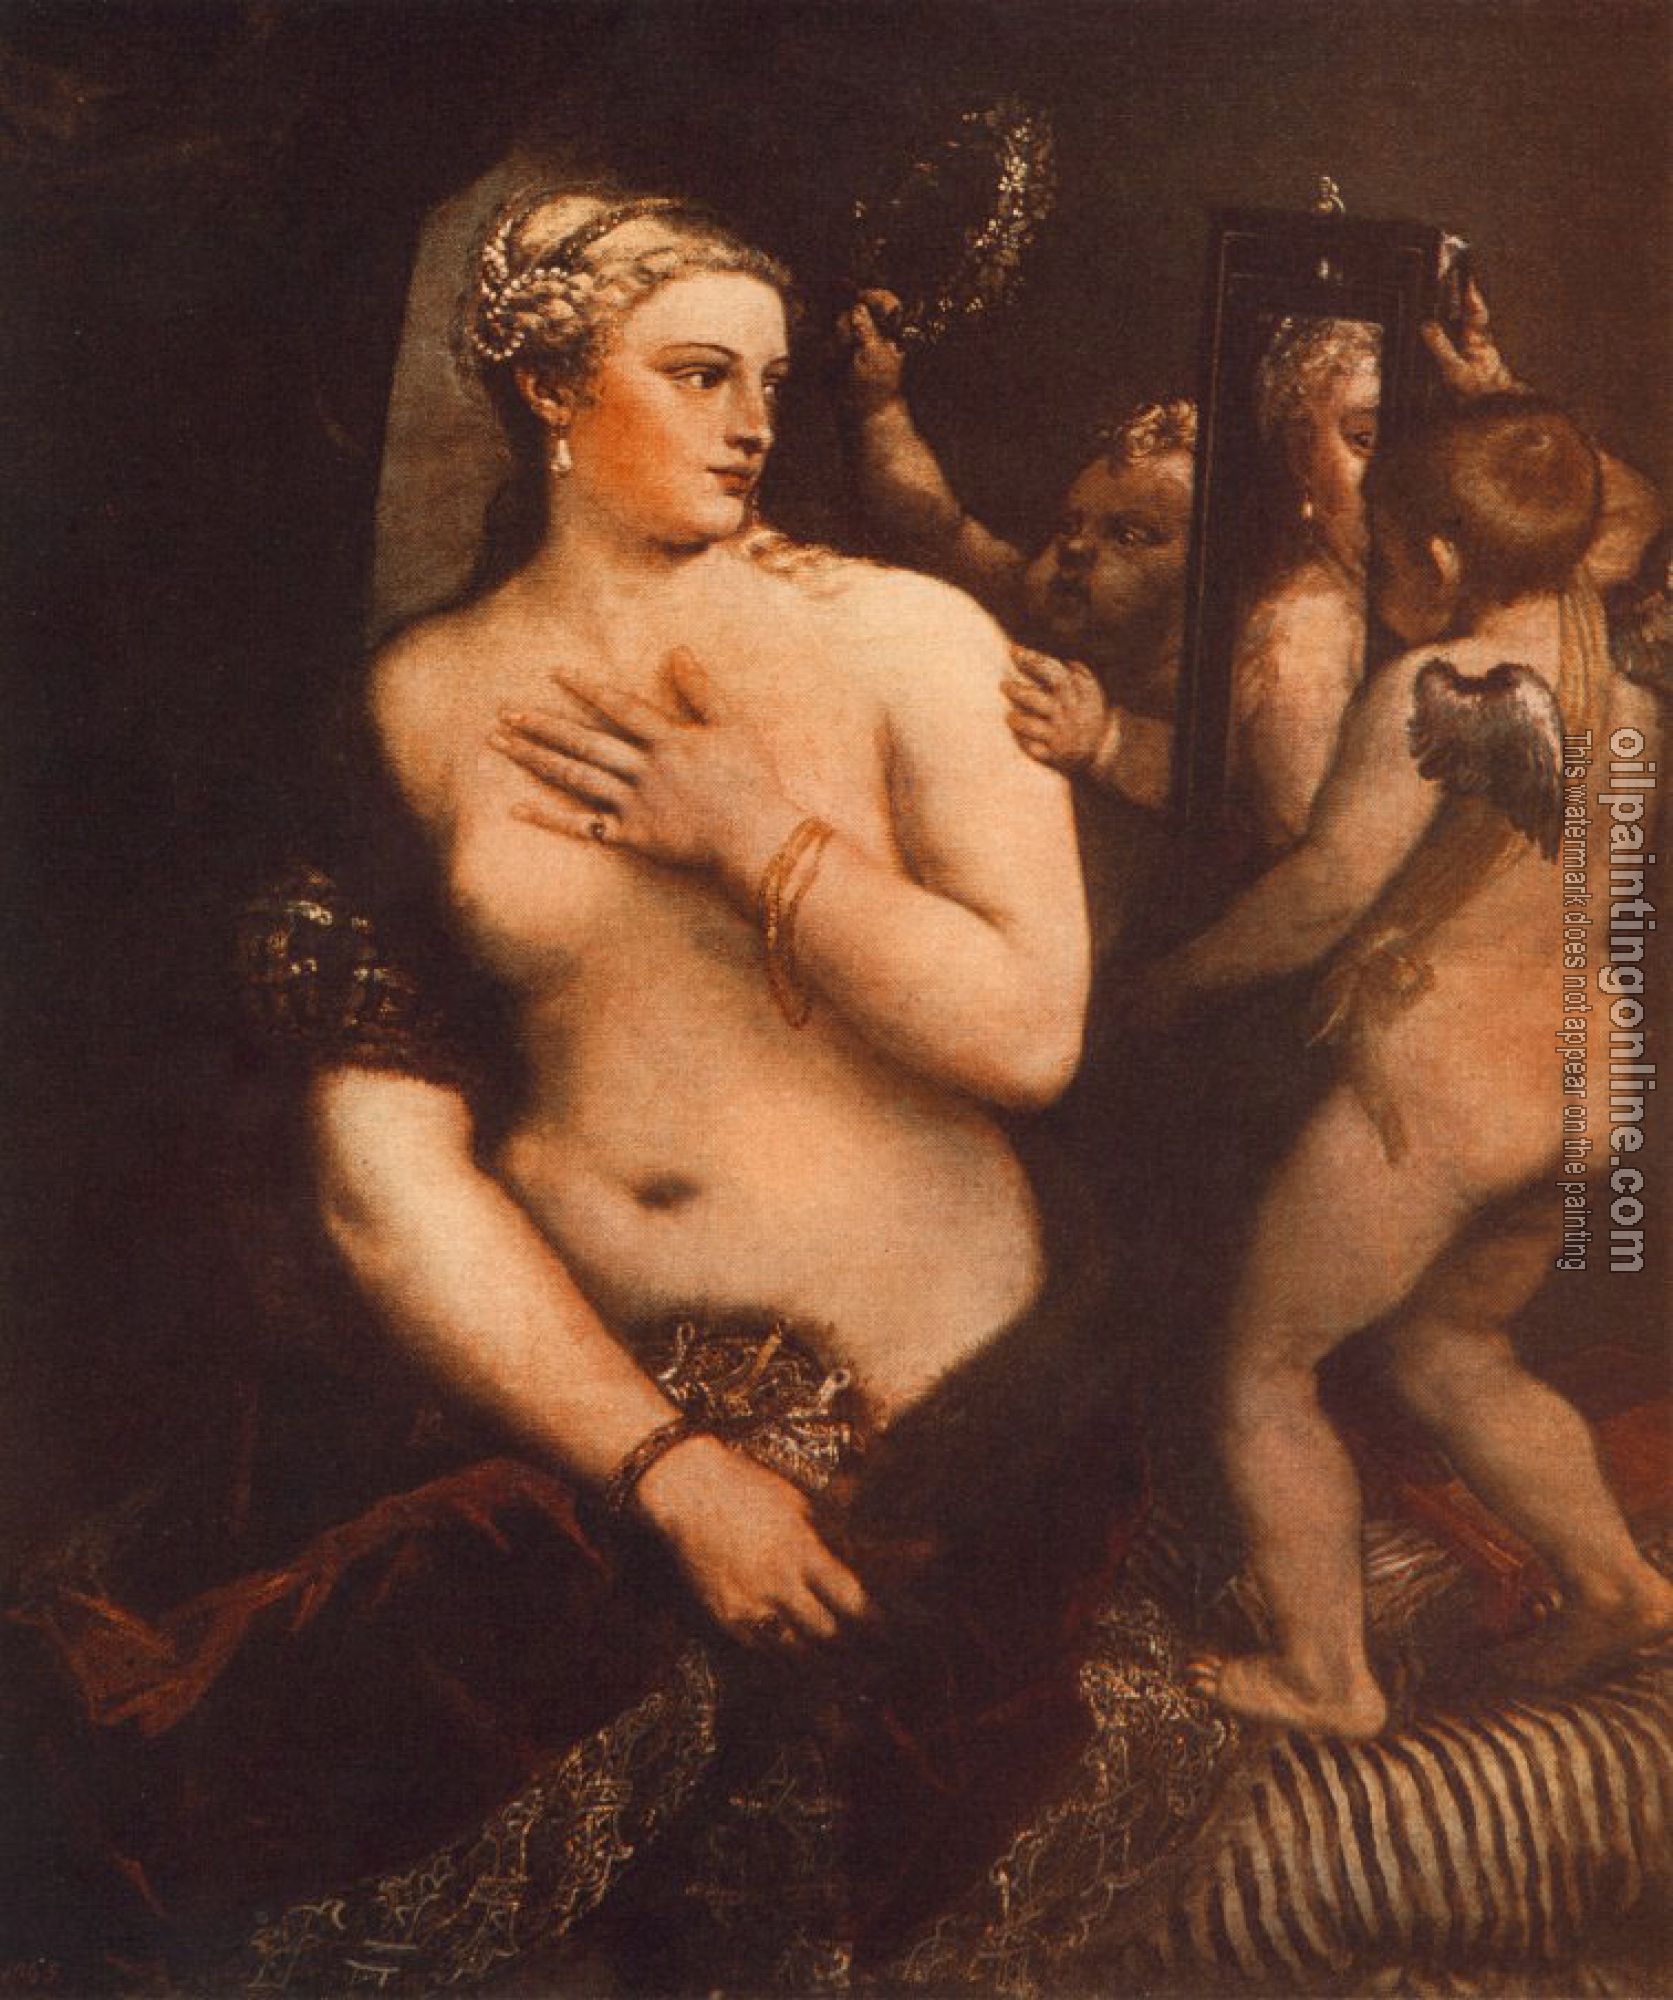 Titian - Venus at her Toilet